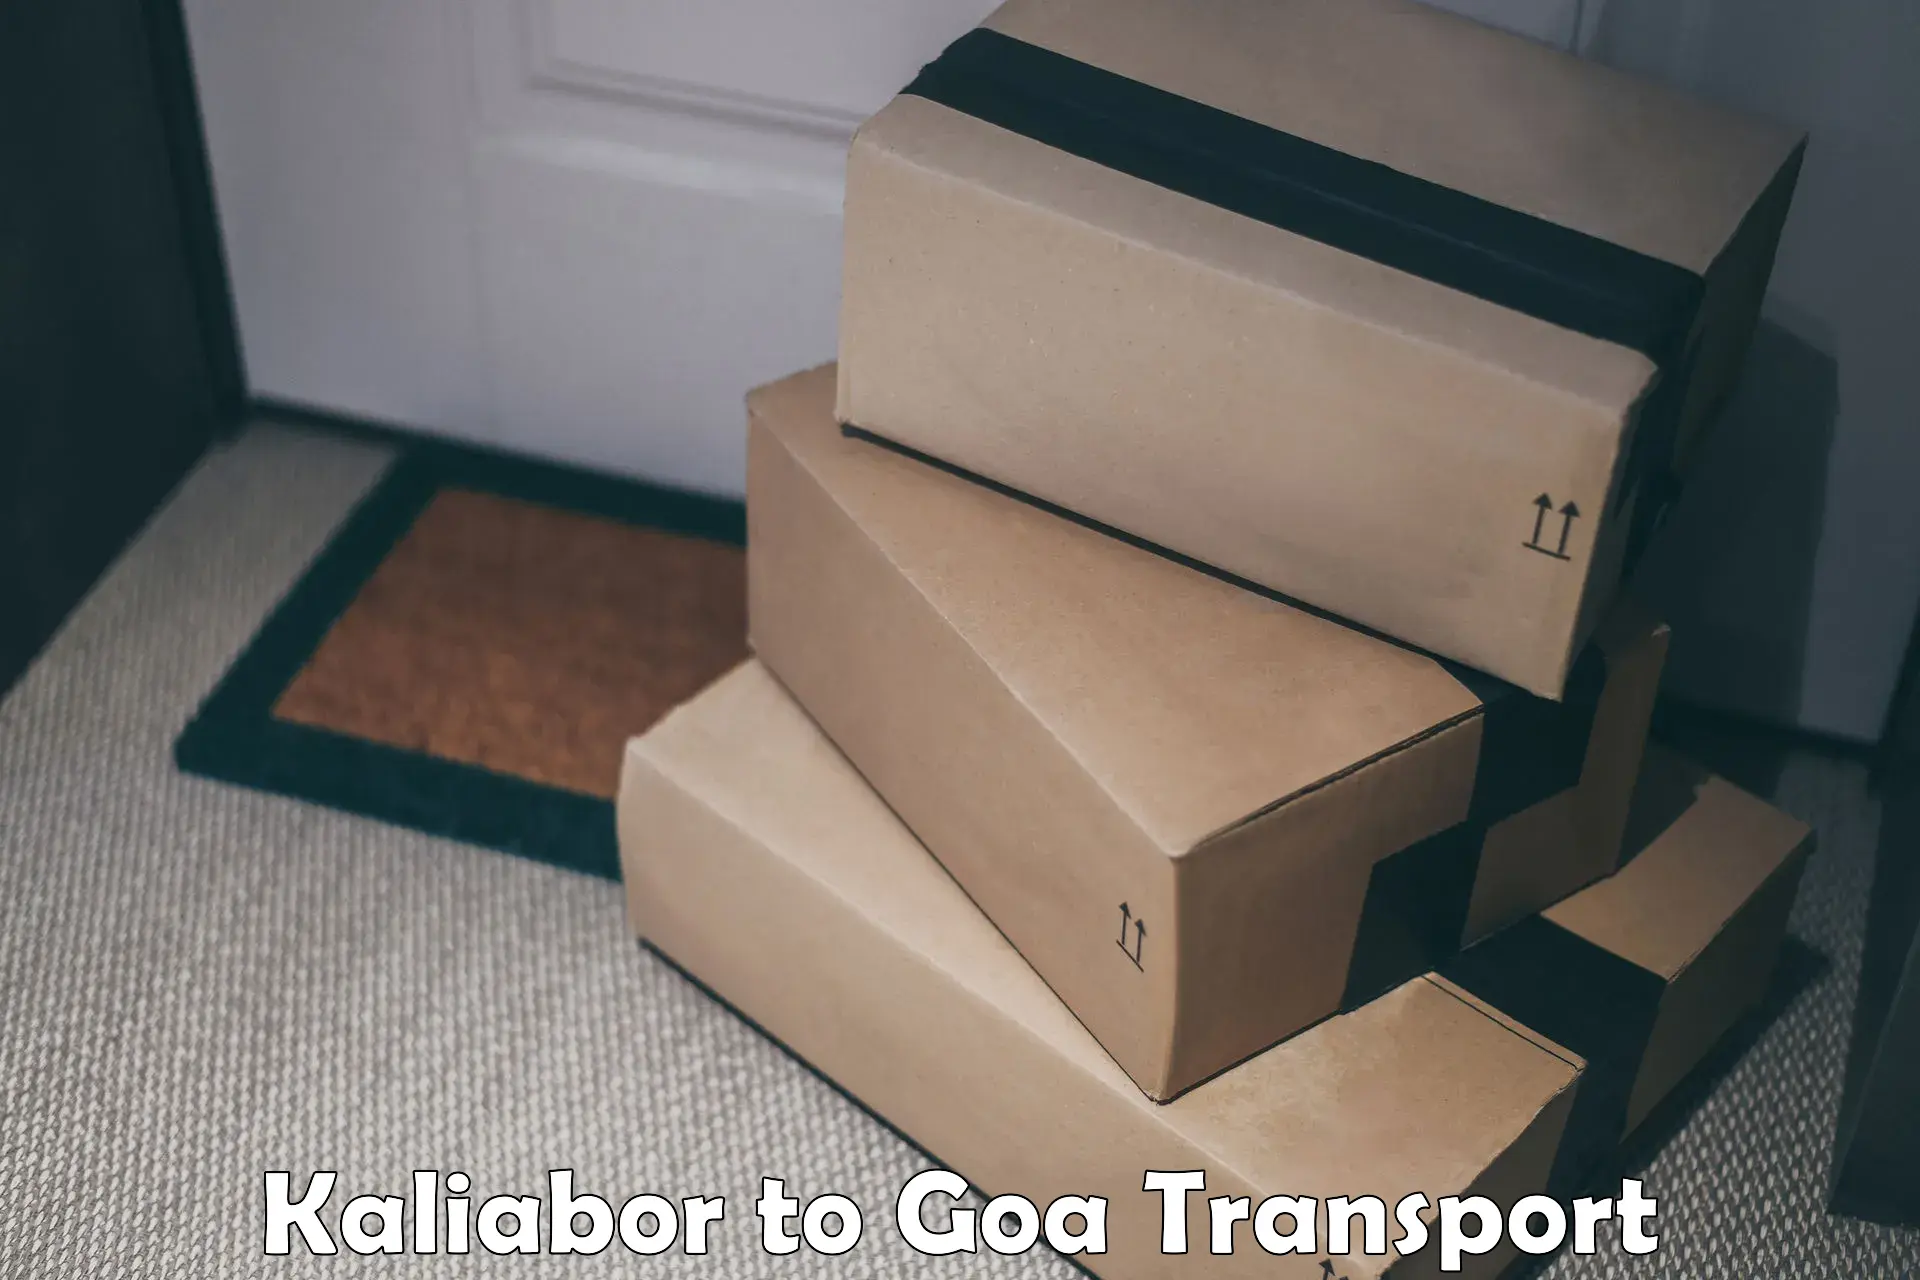 Shipping partner Kaliabor to Ponda